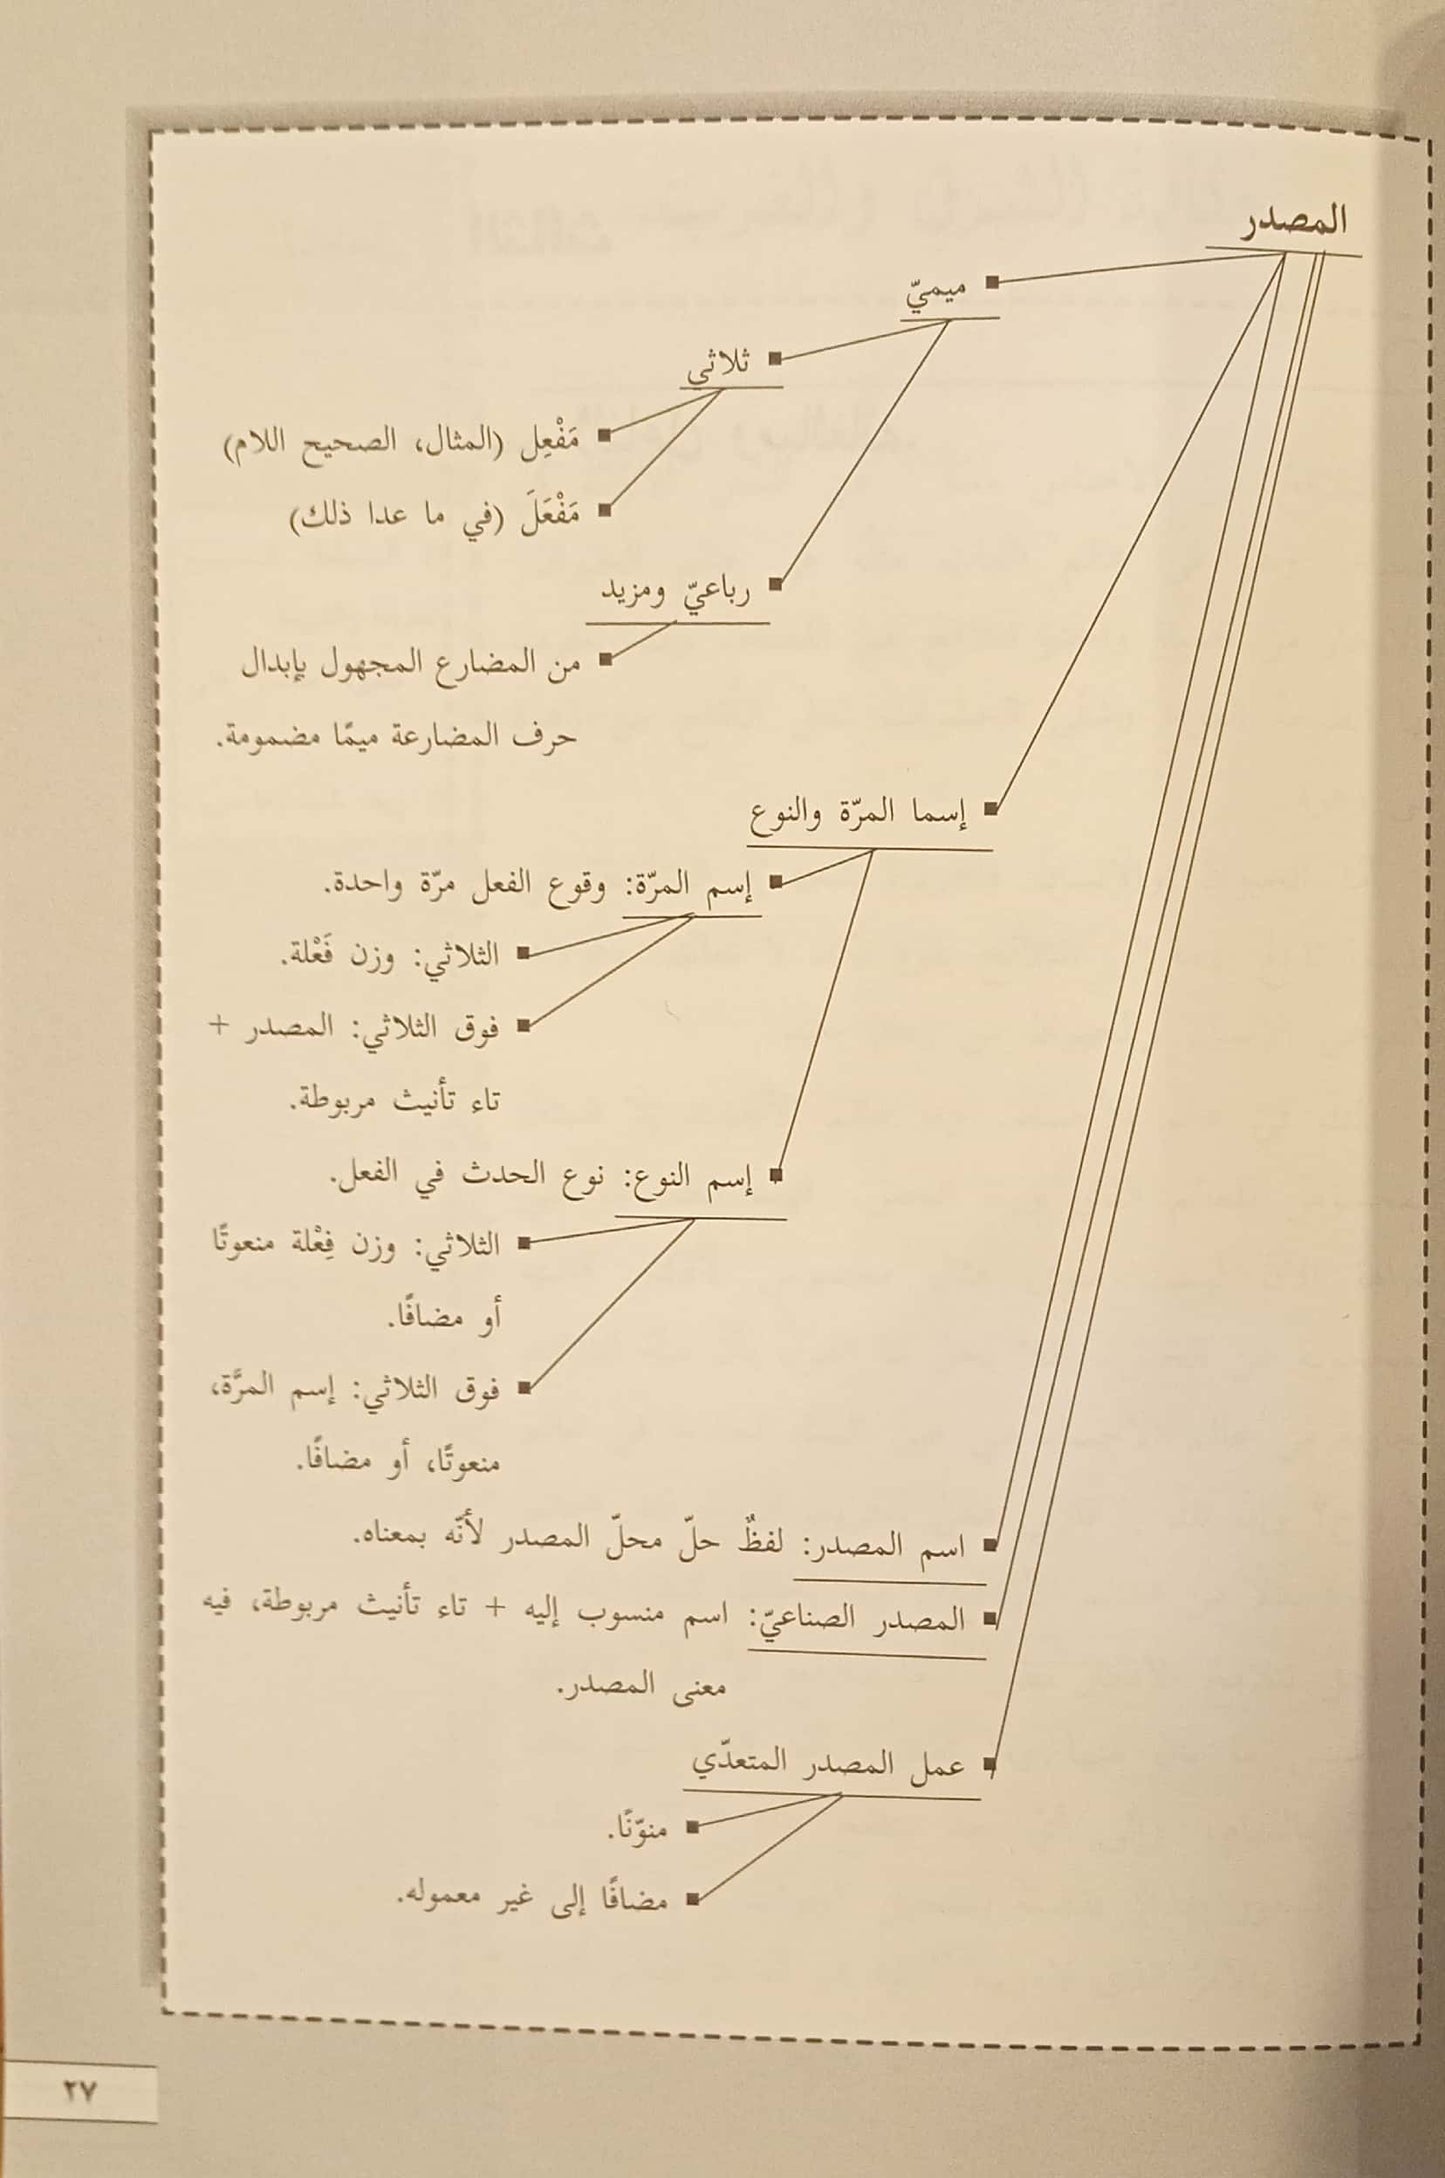 العربية لساني - كتاب الصف الثاني فرع العلوم